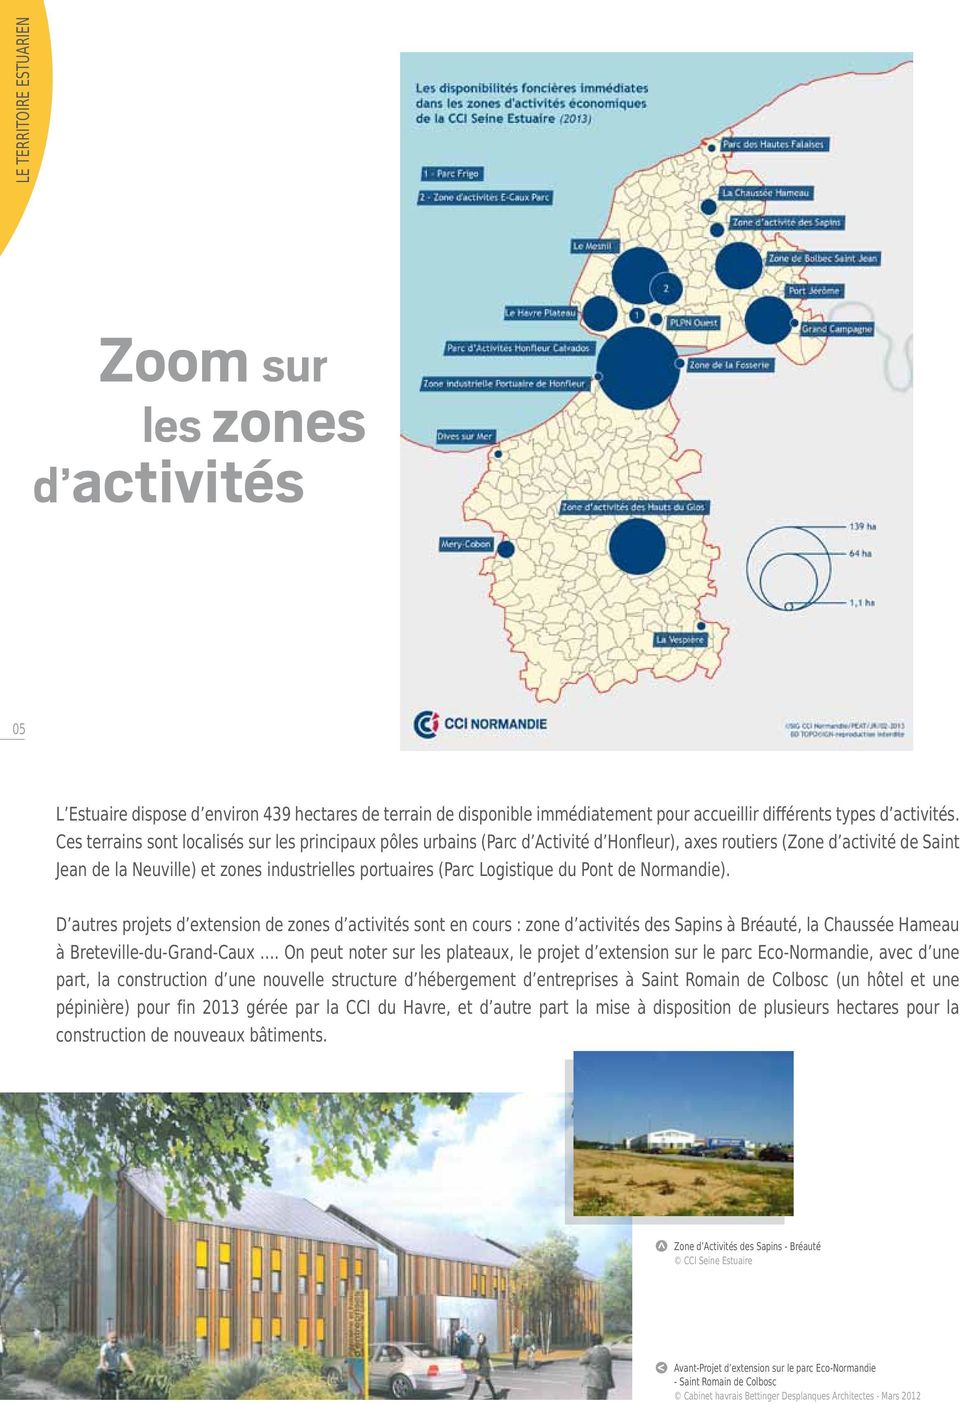 Logistique du Pont de Normandie). D autres projets d extension de zones d activités sont en cours : zone d activités des Sapins à Bréauté, la Chaussée Hameau à BretevilleduGrandCaux.